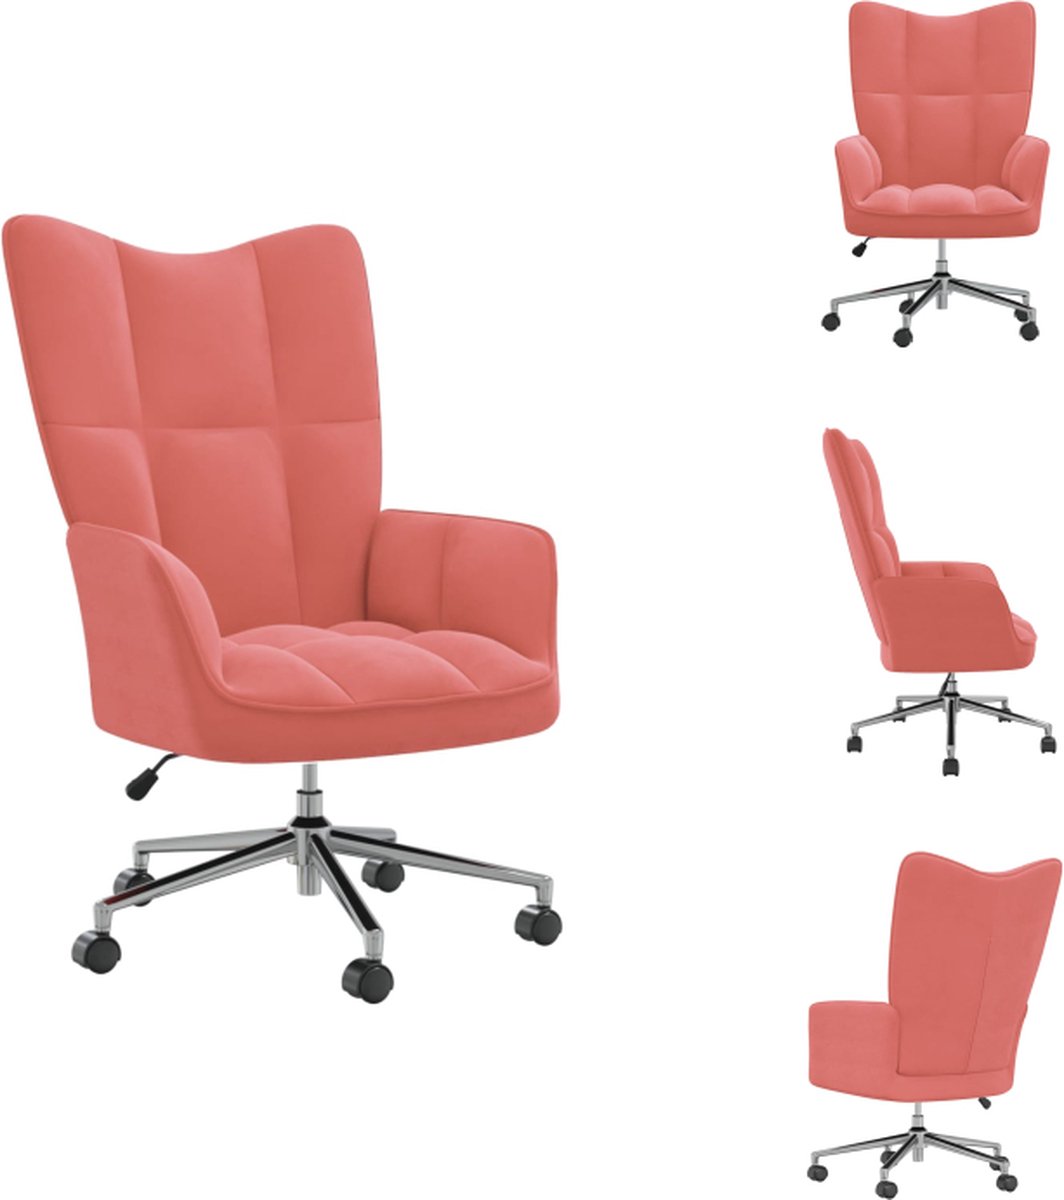 VidaXL Relaxstoel chique en elegant bureaustoel Afmeting- 61.5 x 69 x (94.5 102) cm Kleur- roze Materiaal- fluweel en staal Fauteuil